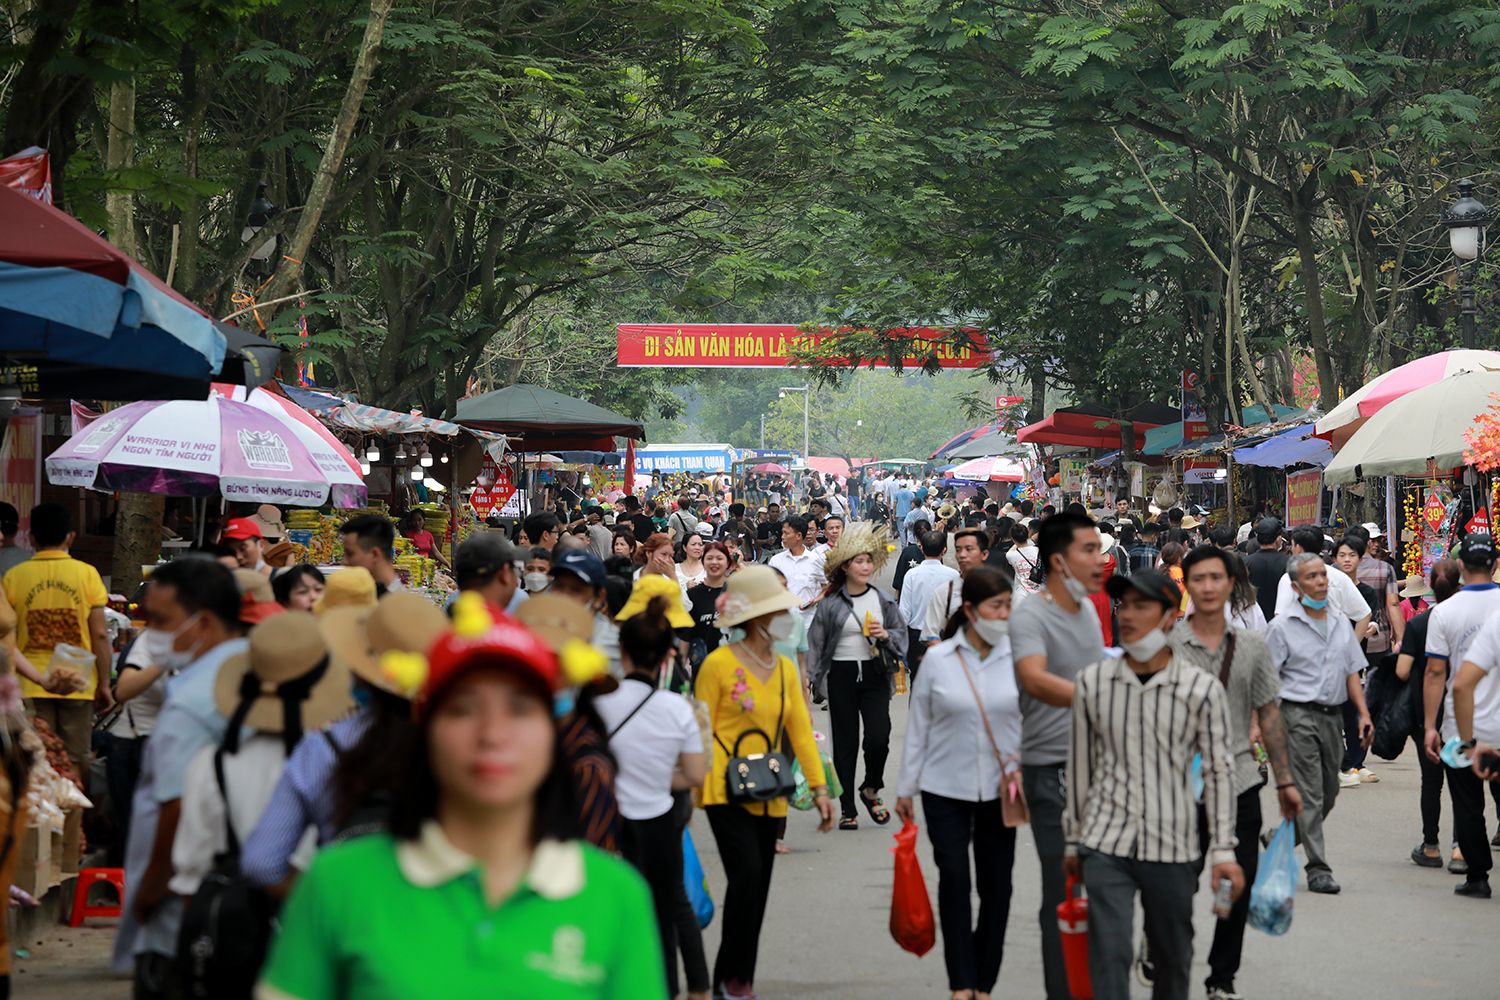 Hàng nghìn người đổ về Đền Hùng trước ngày chính lễ 10/3 - 16